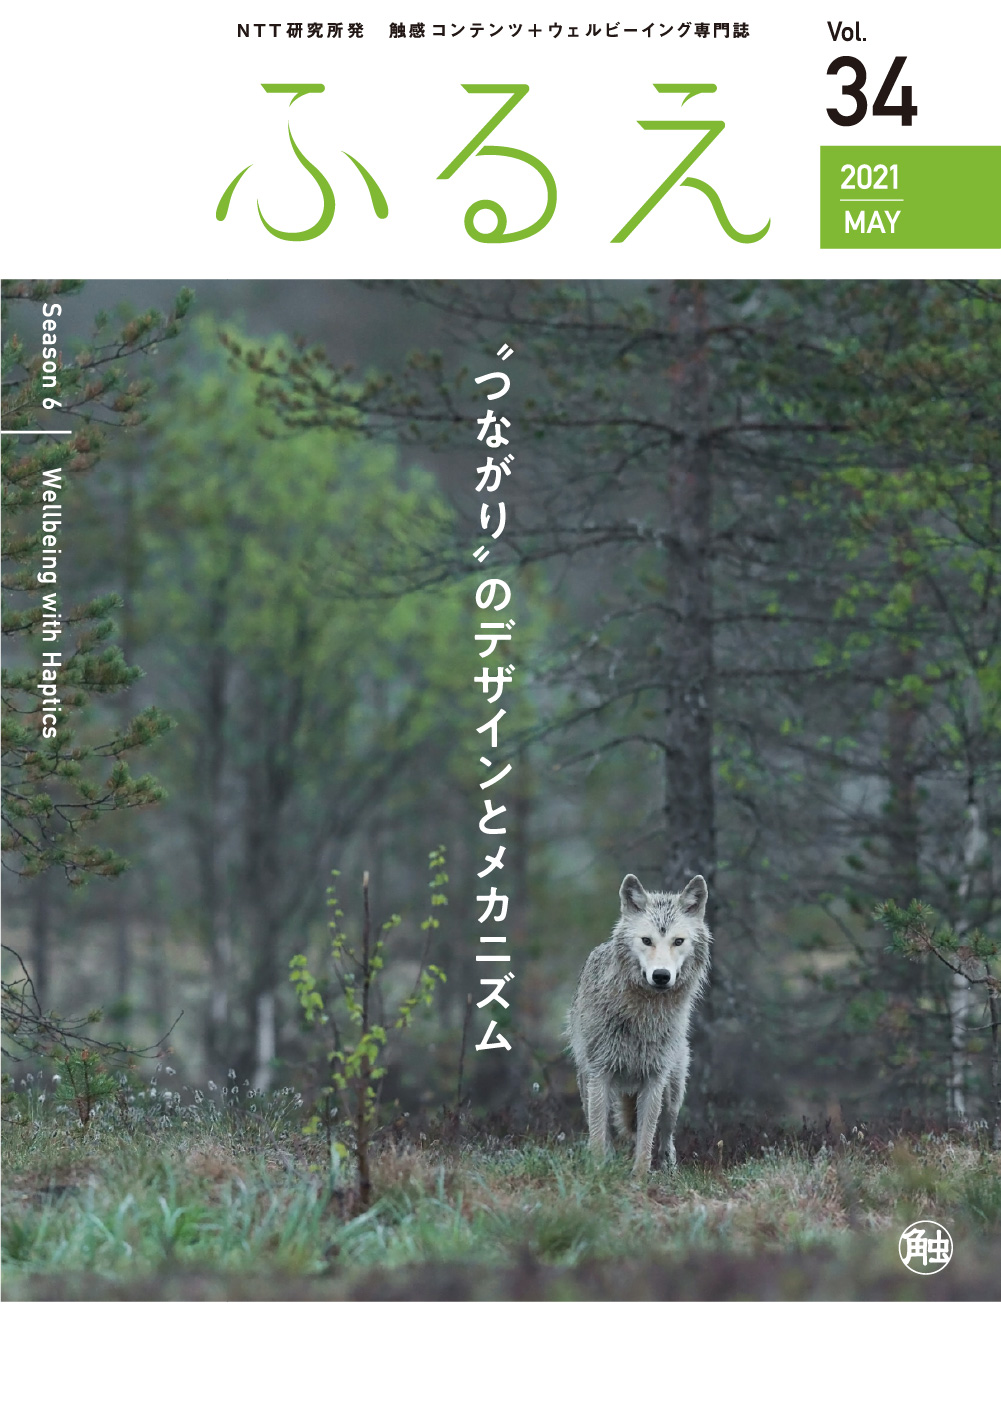 触感コンテンツ＋ウェルビーイング専門誌 ふるえ Vol.34 “つながり”のデザインとメカニズム